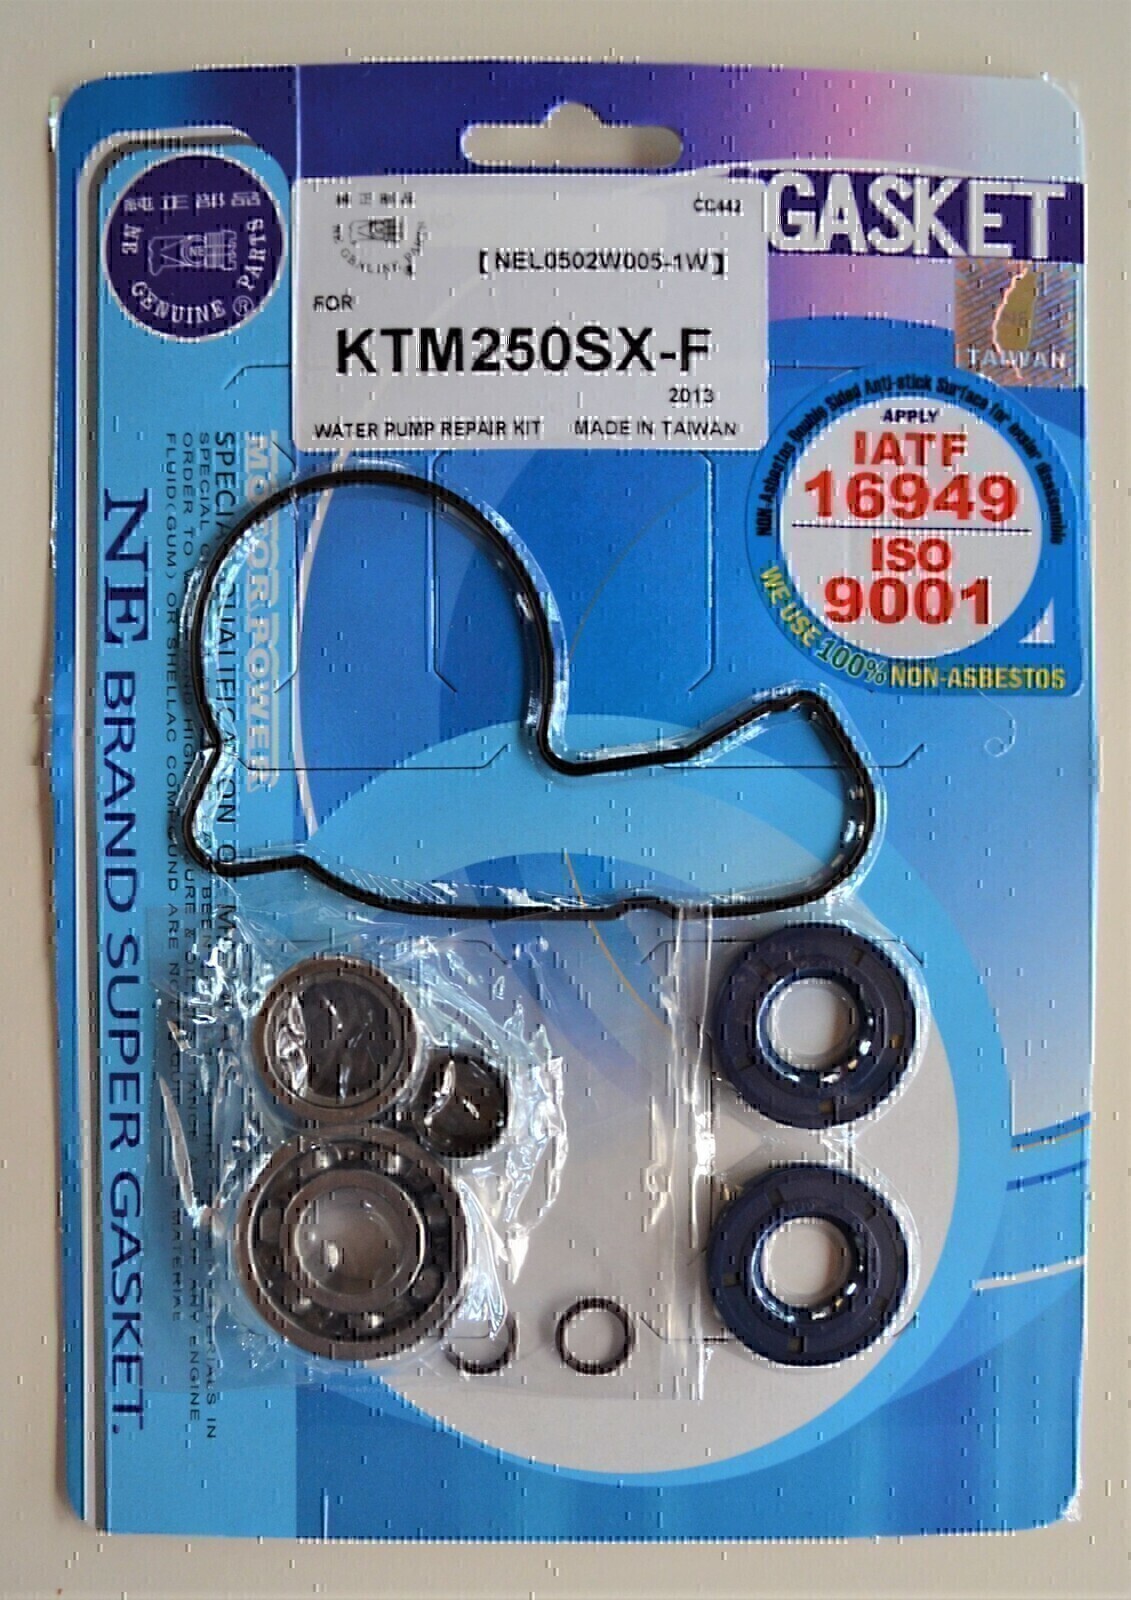 WATER PUMP REPAIR KIT FOR KTM 250SX-F 2013 250XC-F 2013 350EXC-F 2012 - 2013 350SX-F 2011 - 2013 350XC-F 2011 - 2013 350XCF - W 2012 - 2013